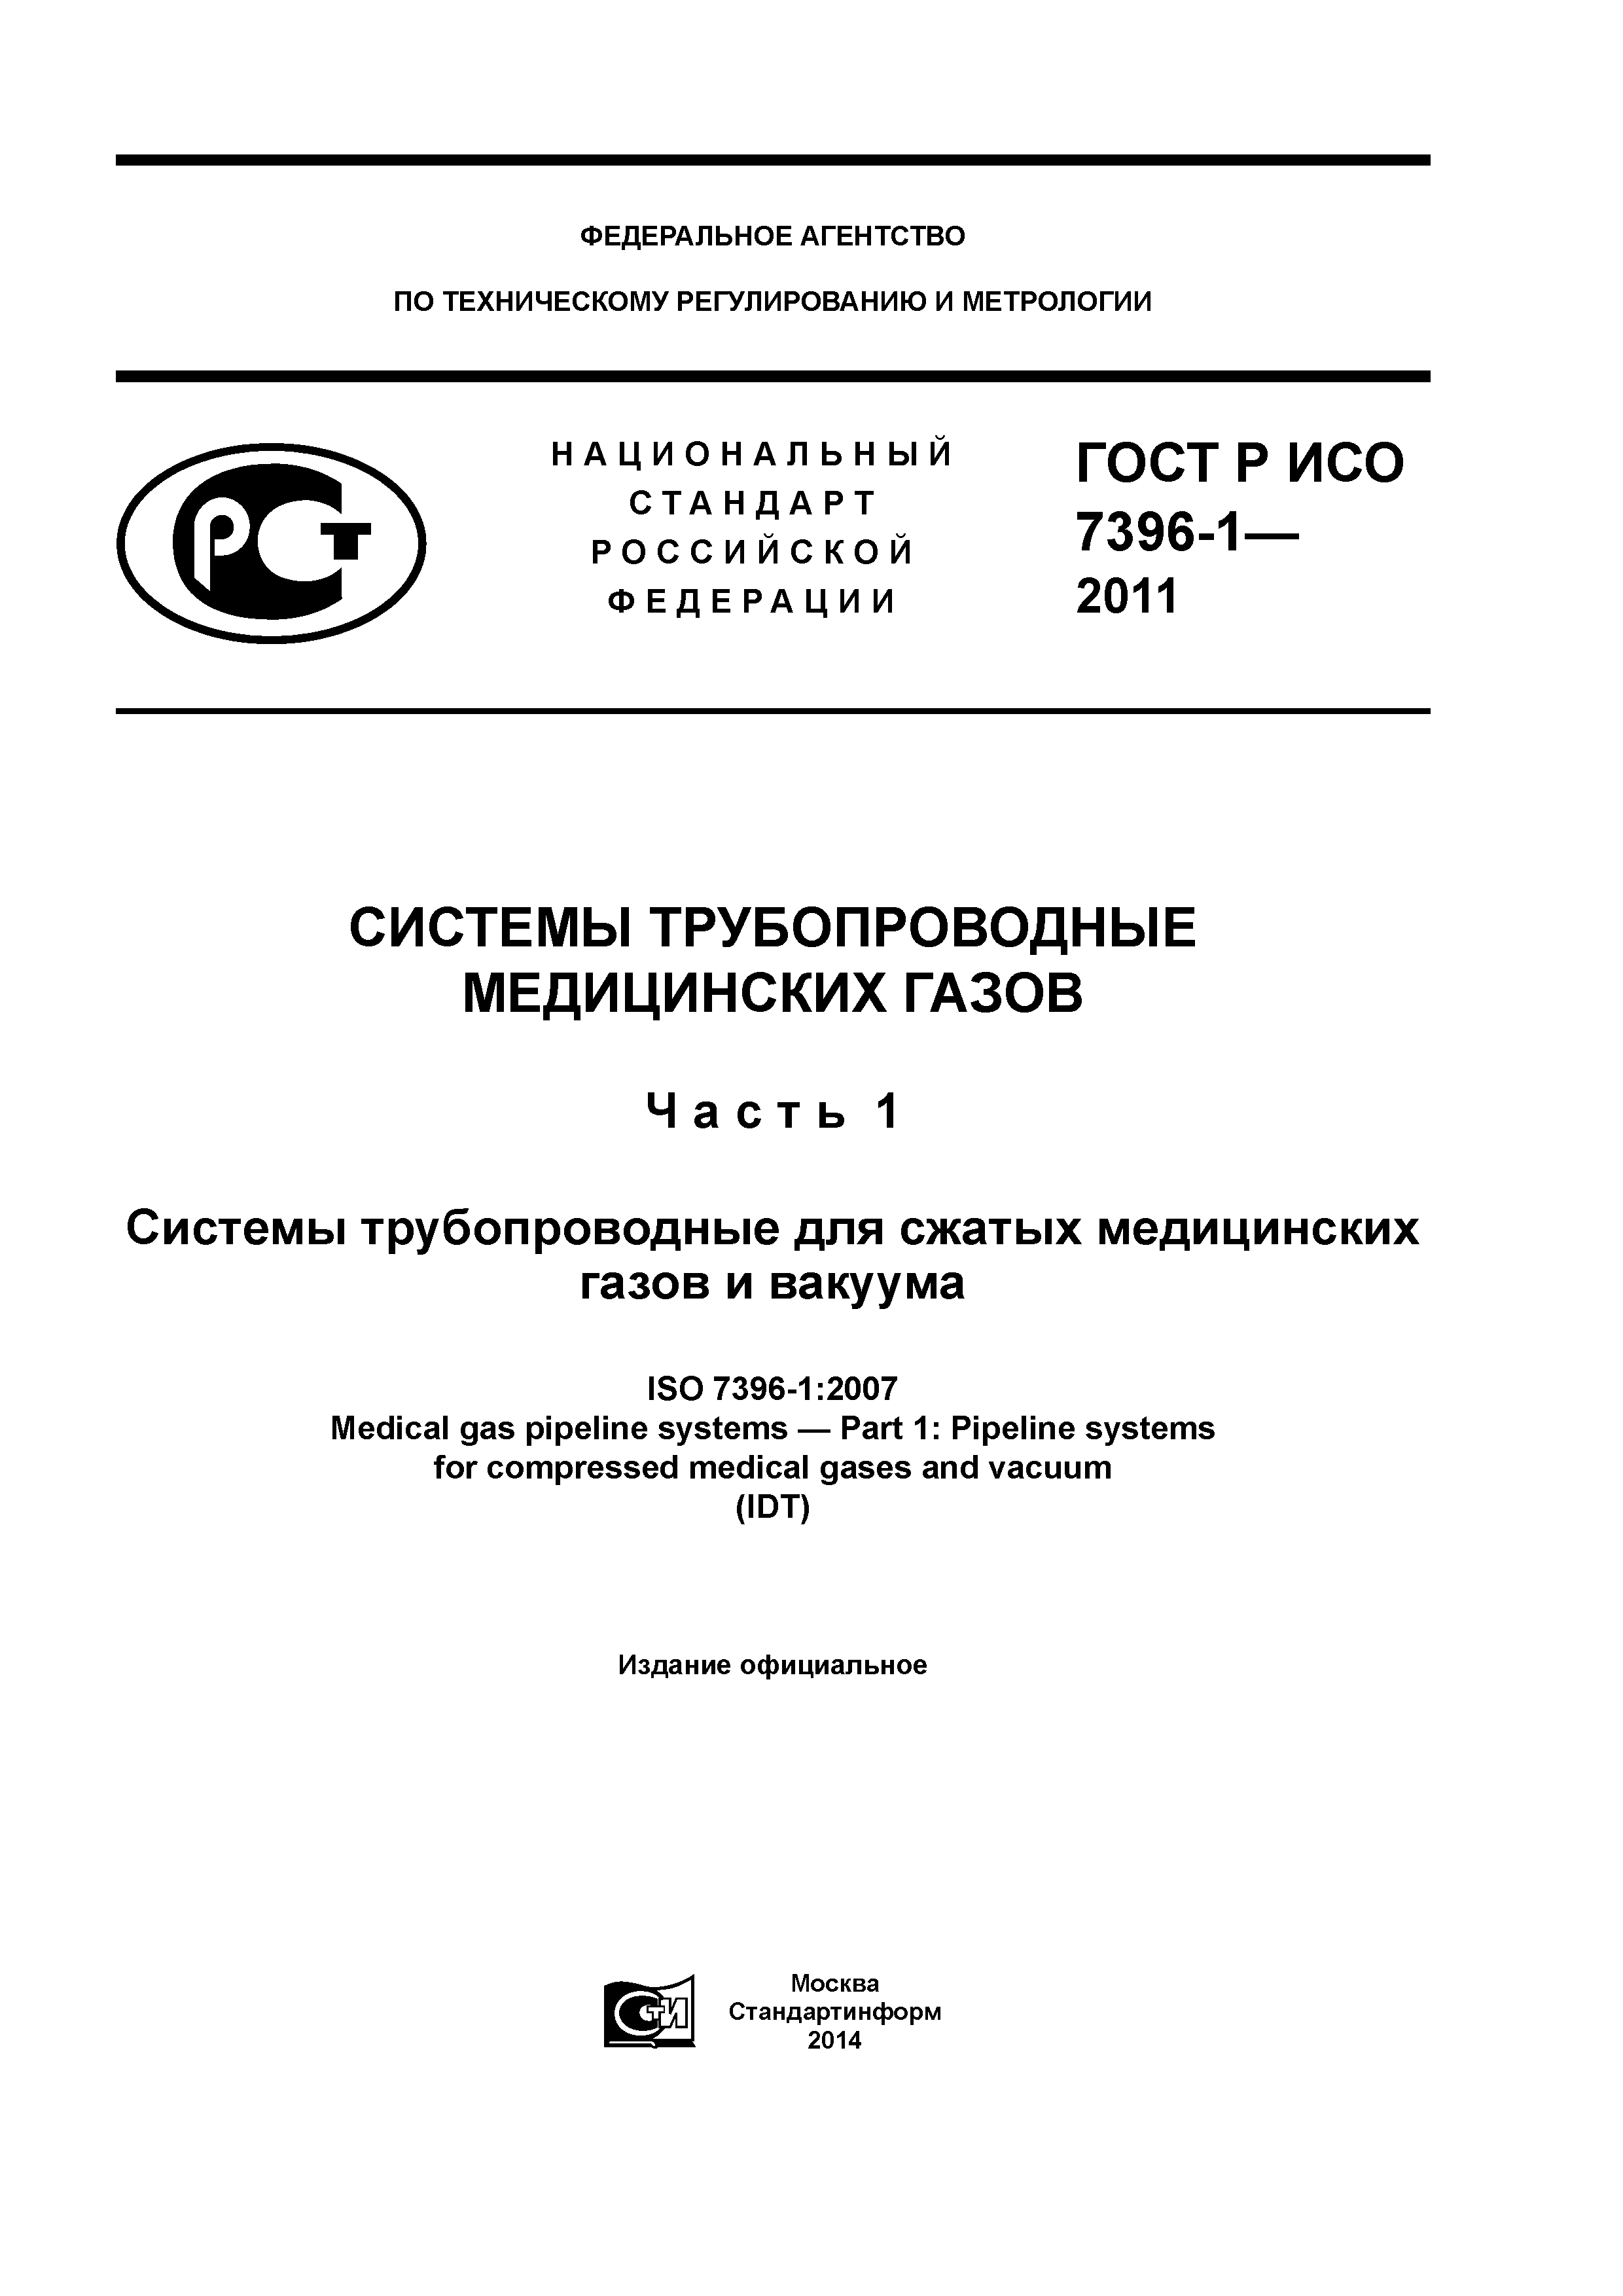 ГОСТ Р ИСО 7396-1-2011